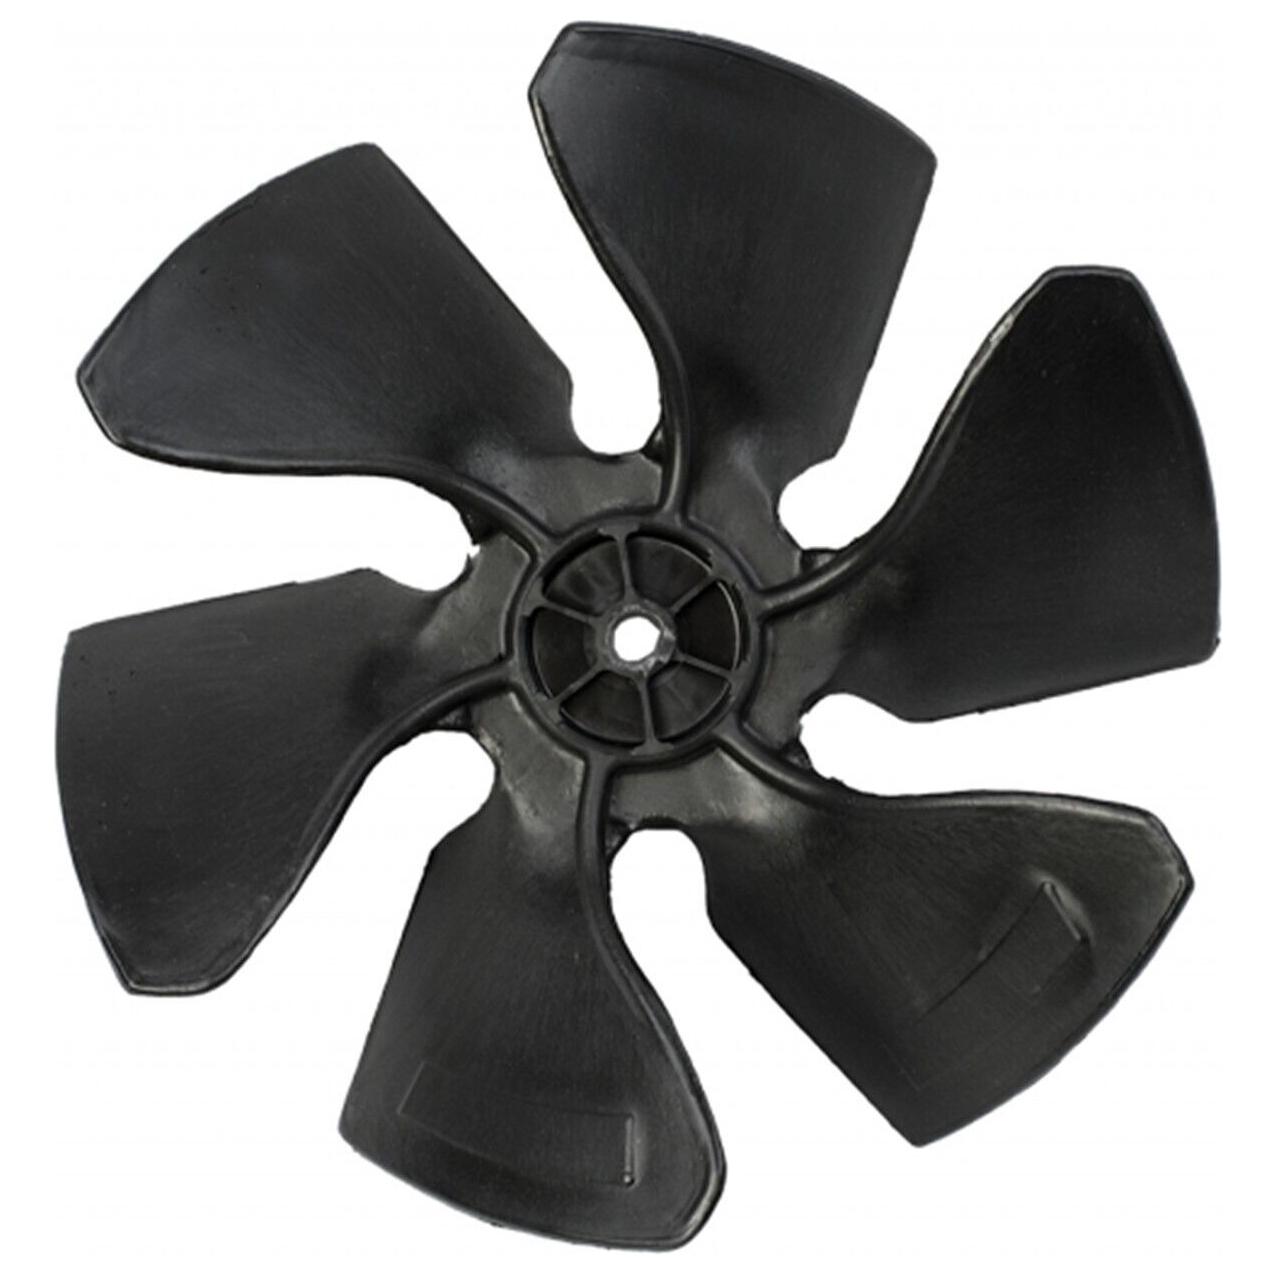 Coleman Mach 6733-3221 Air Conditioner Condenser Fan, 6 Blade, Black